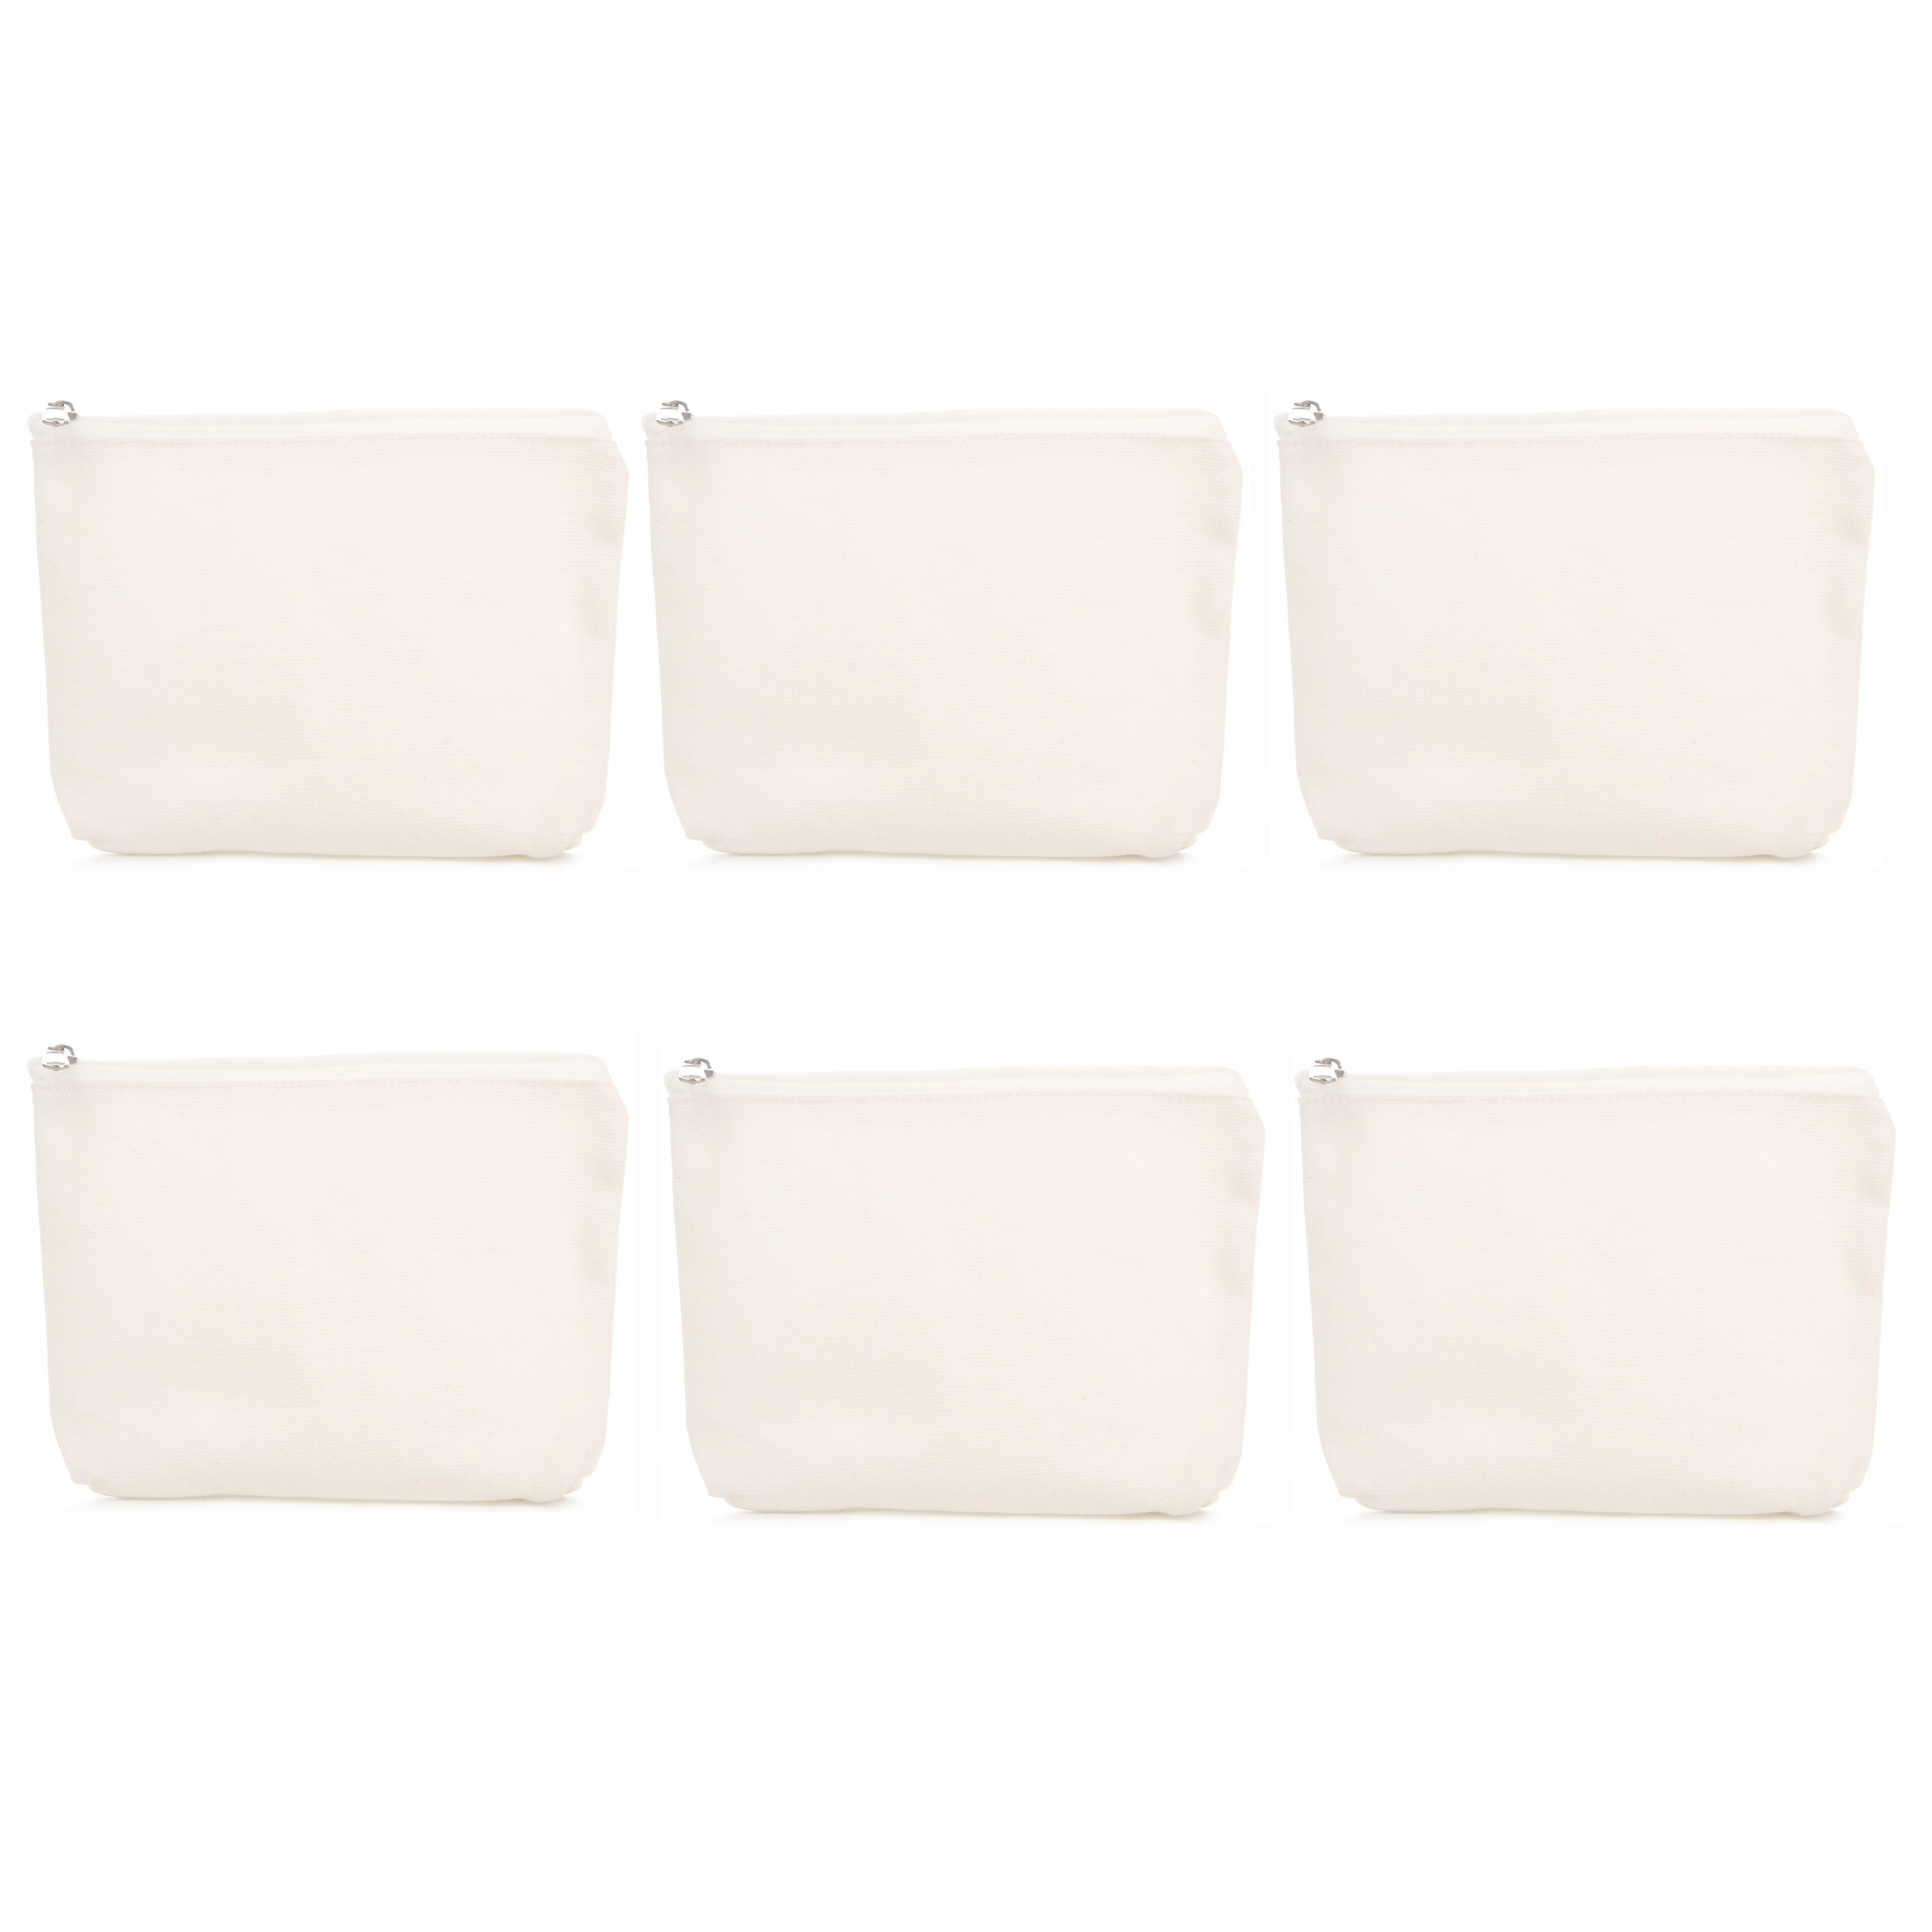 6 stks/partij Make-Up Tas DIY Katoen Zuiver Wit Rits Case Canvas eenvoudige Reizen Cosmetische Tas